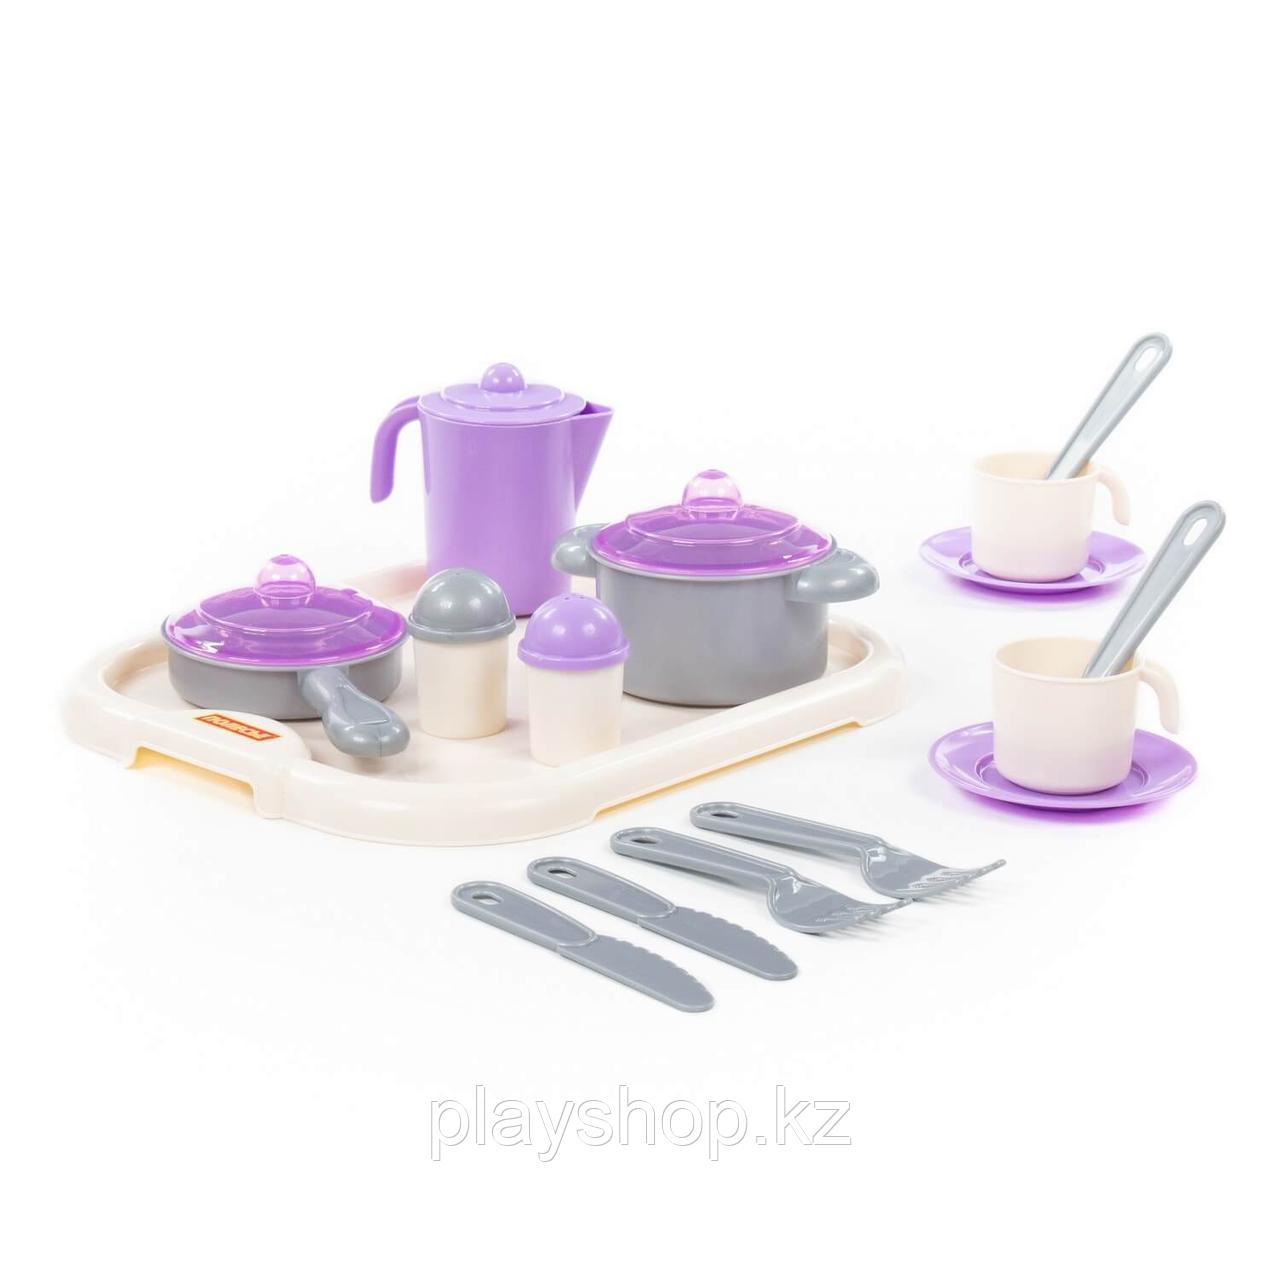 Набор детской посуды "Настенька" с подносом на 2 персоны (3940)